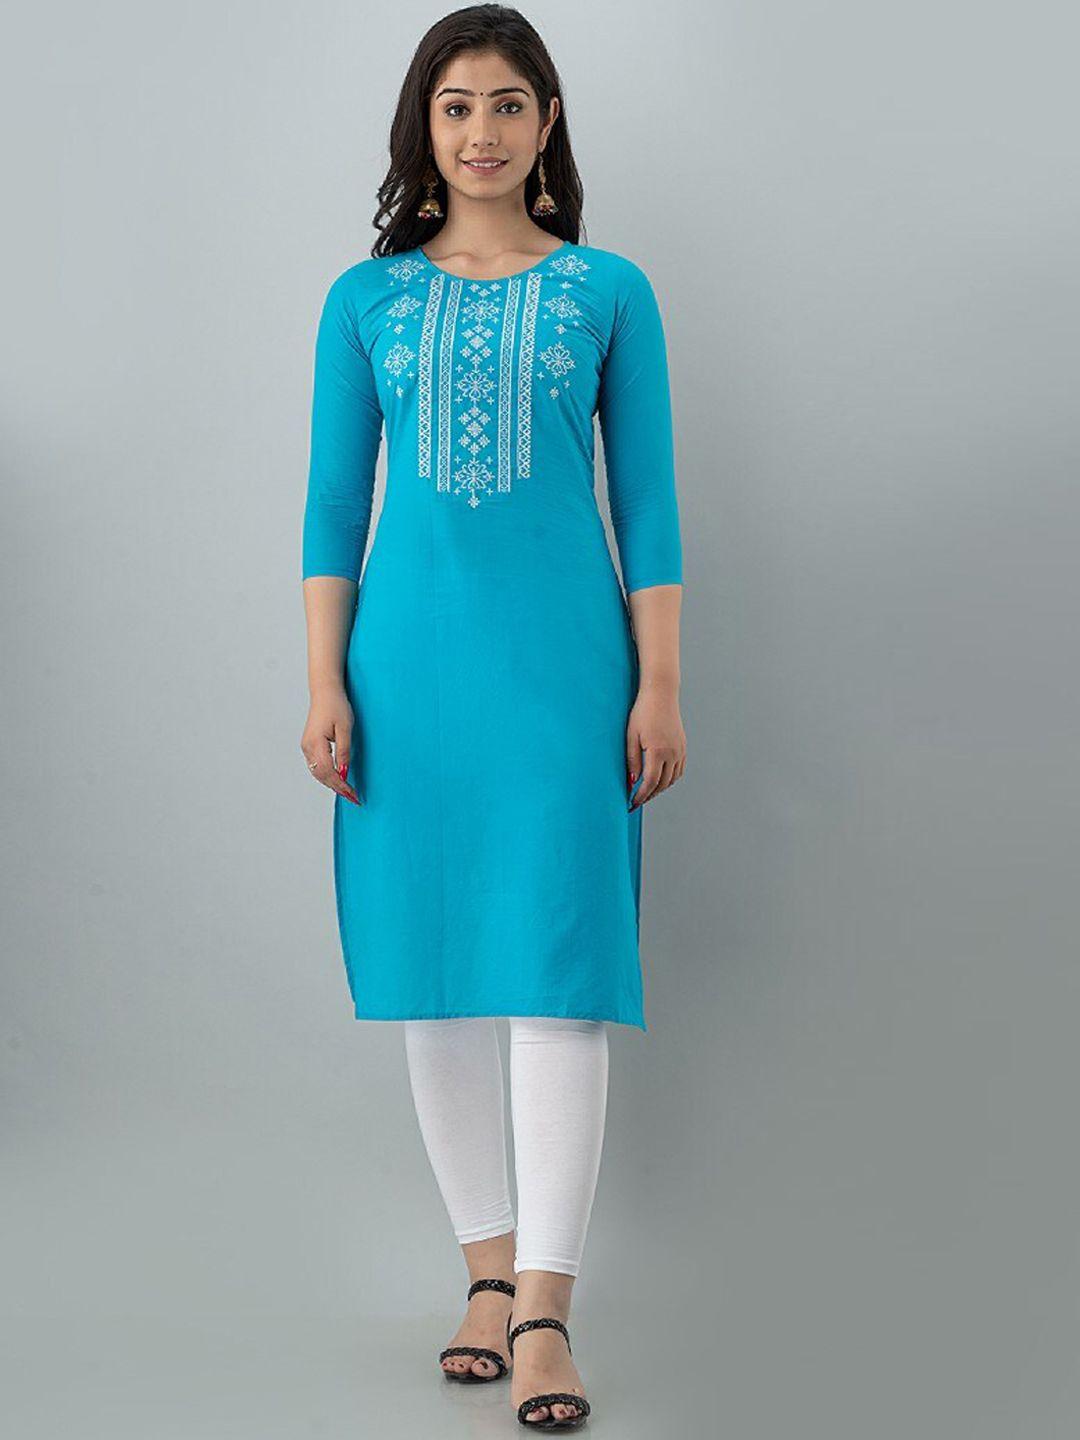 ksharaa turquoise blue geometric embroidered thread work kurta